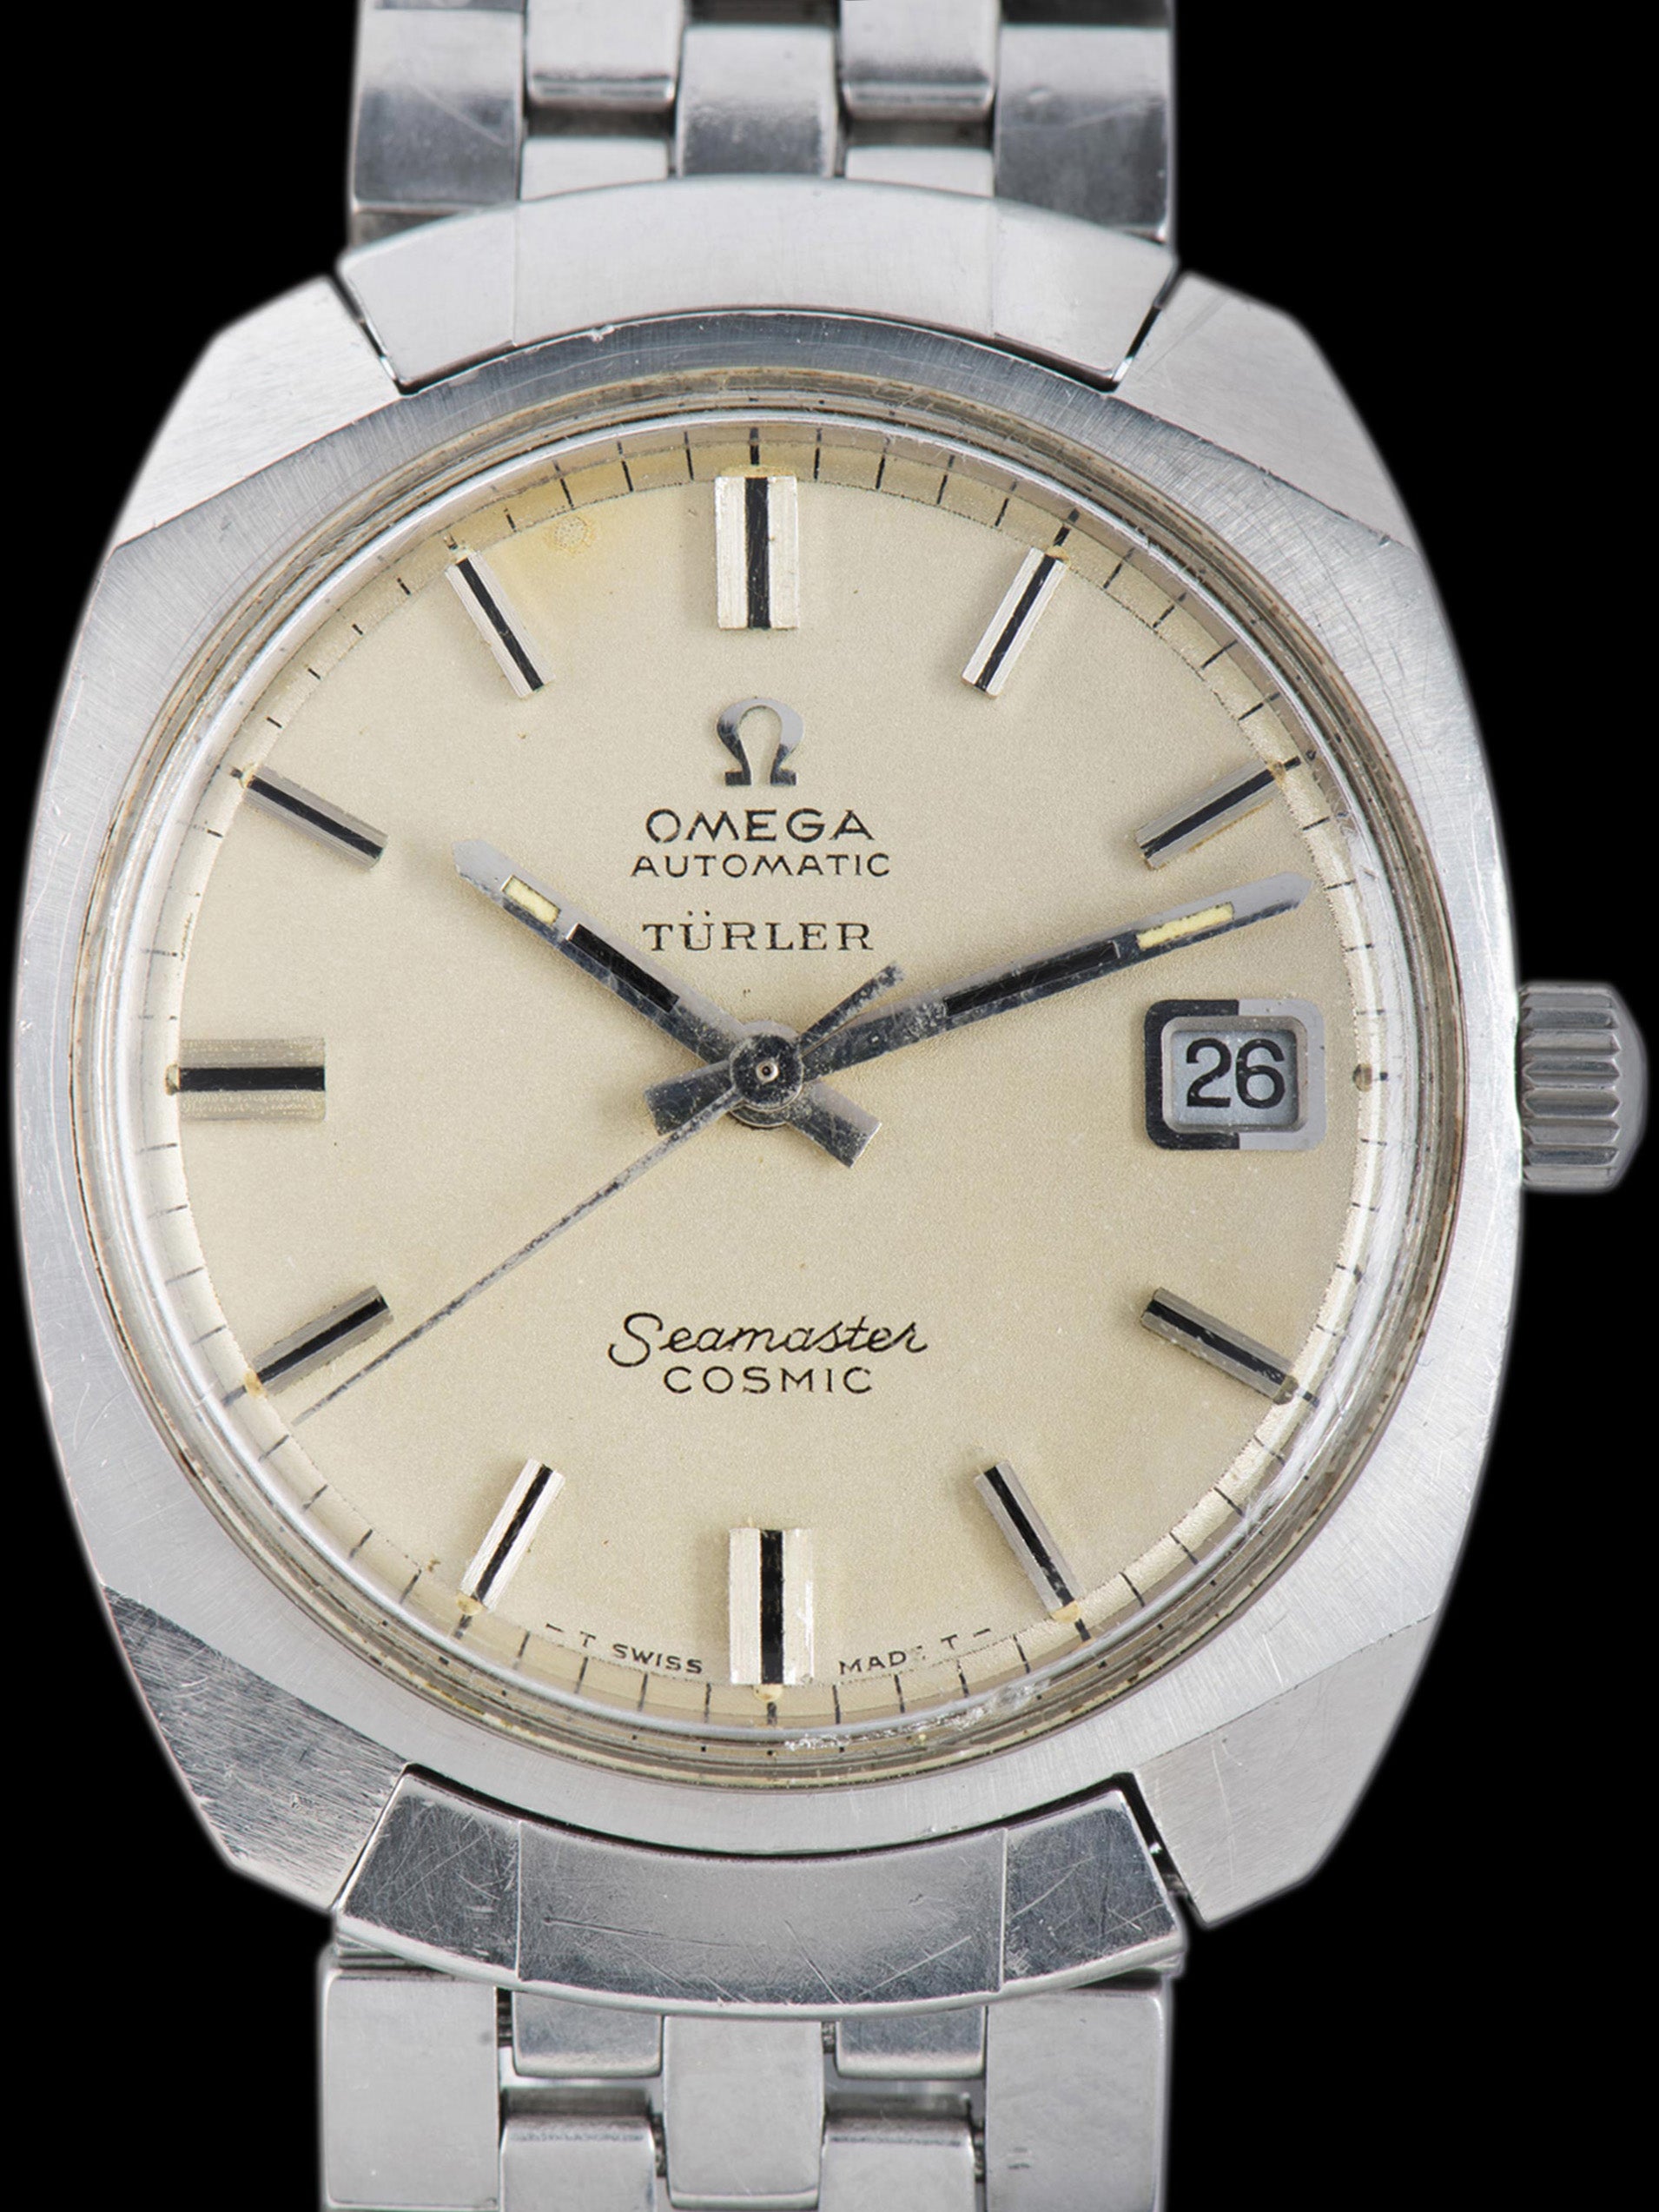 1970s Omega Seamaster Cosmic (Ref. 166.022) "Turler" Dial